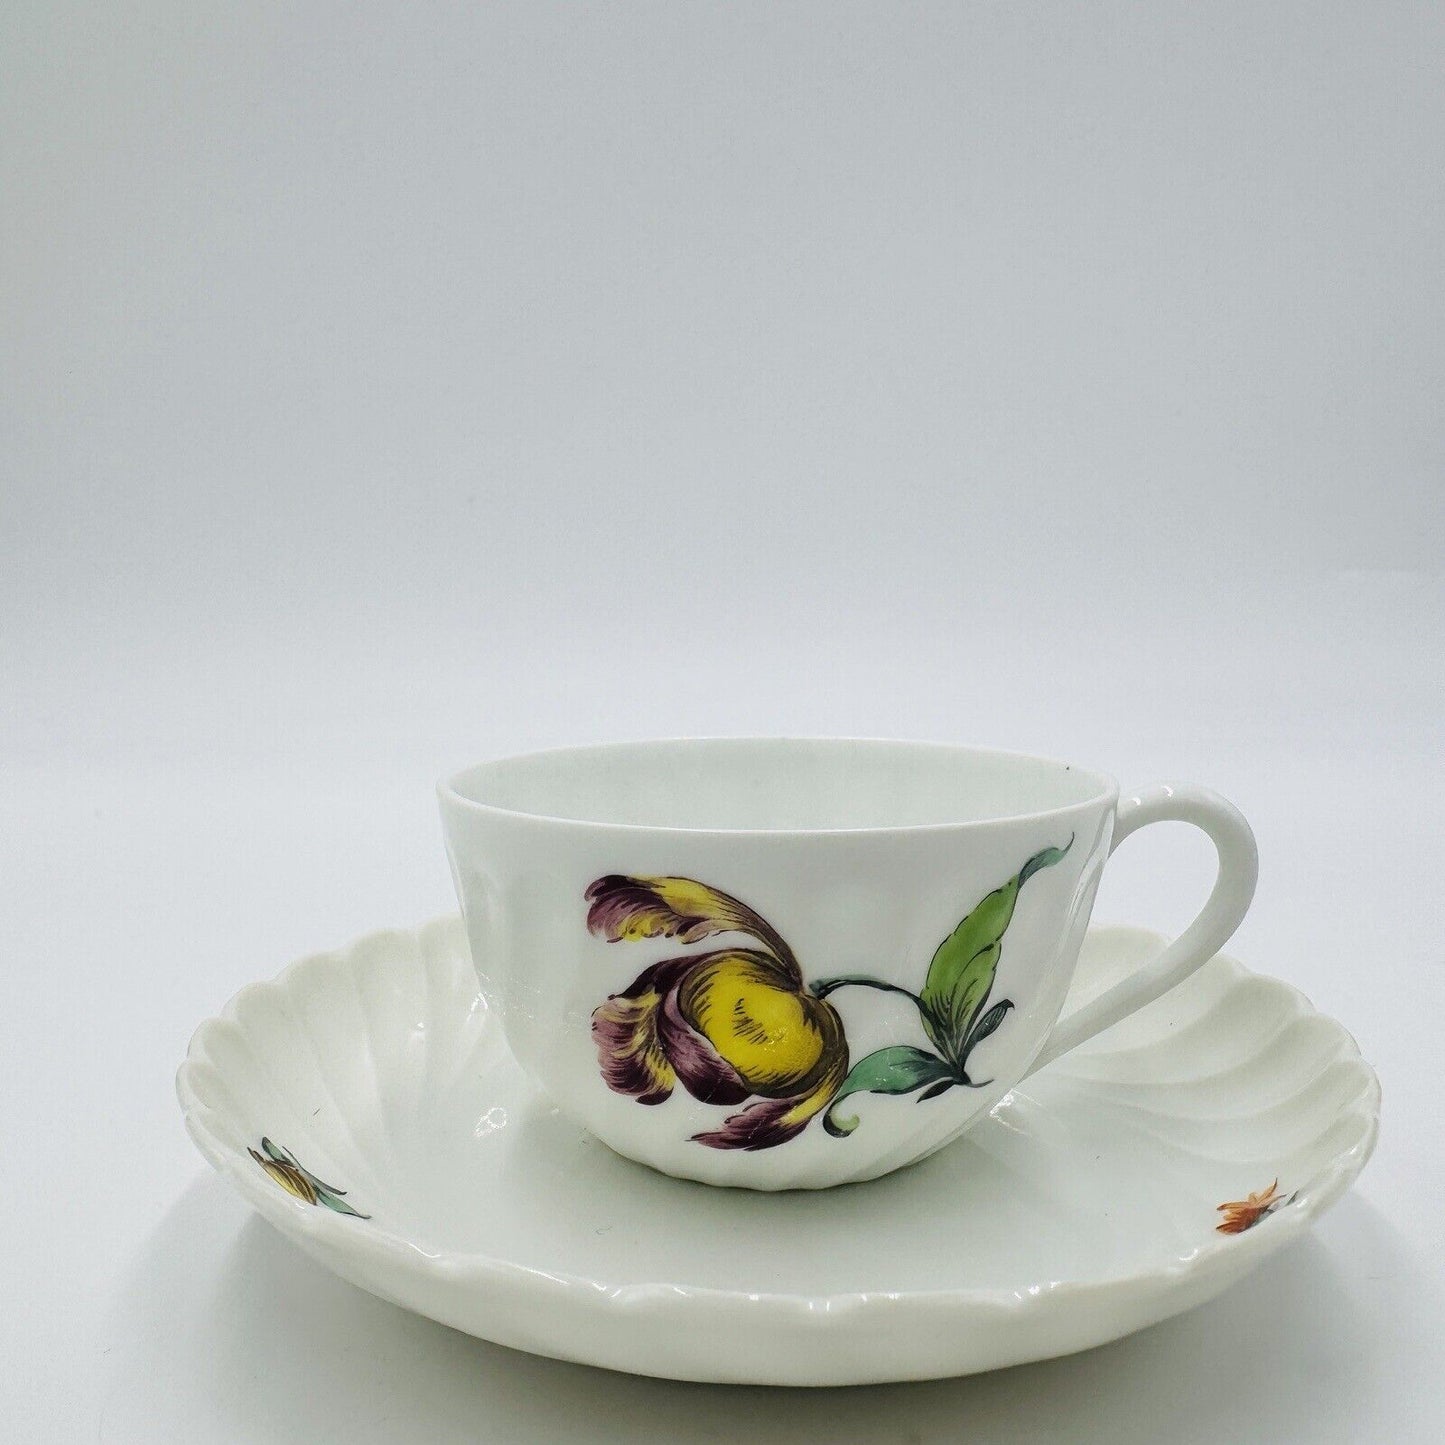 Antique Nymphenburg Porcelain Germany Welle Ribbed Teacup & Saucer 1632 Floral